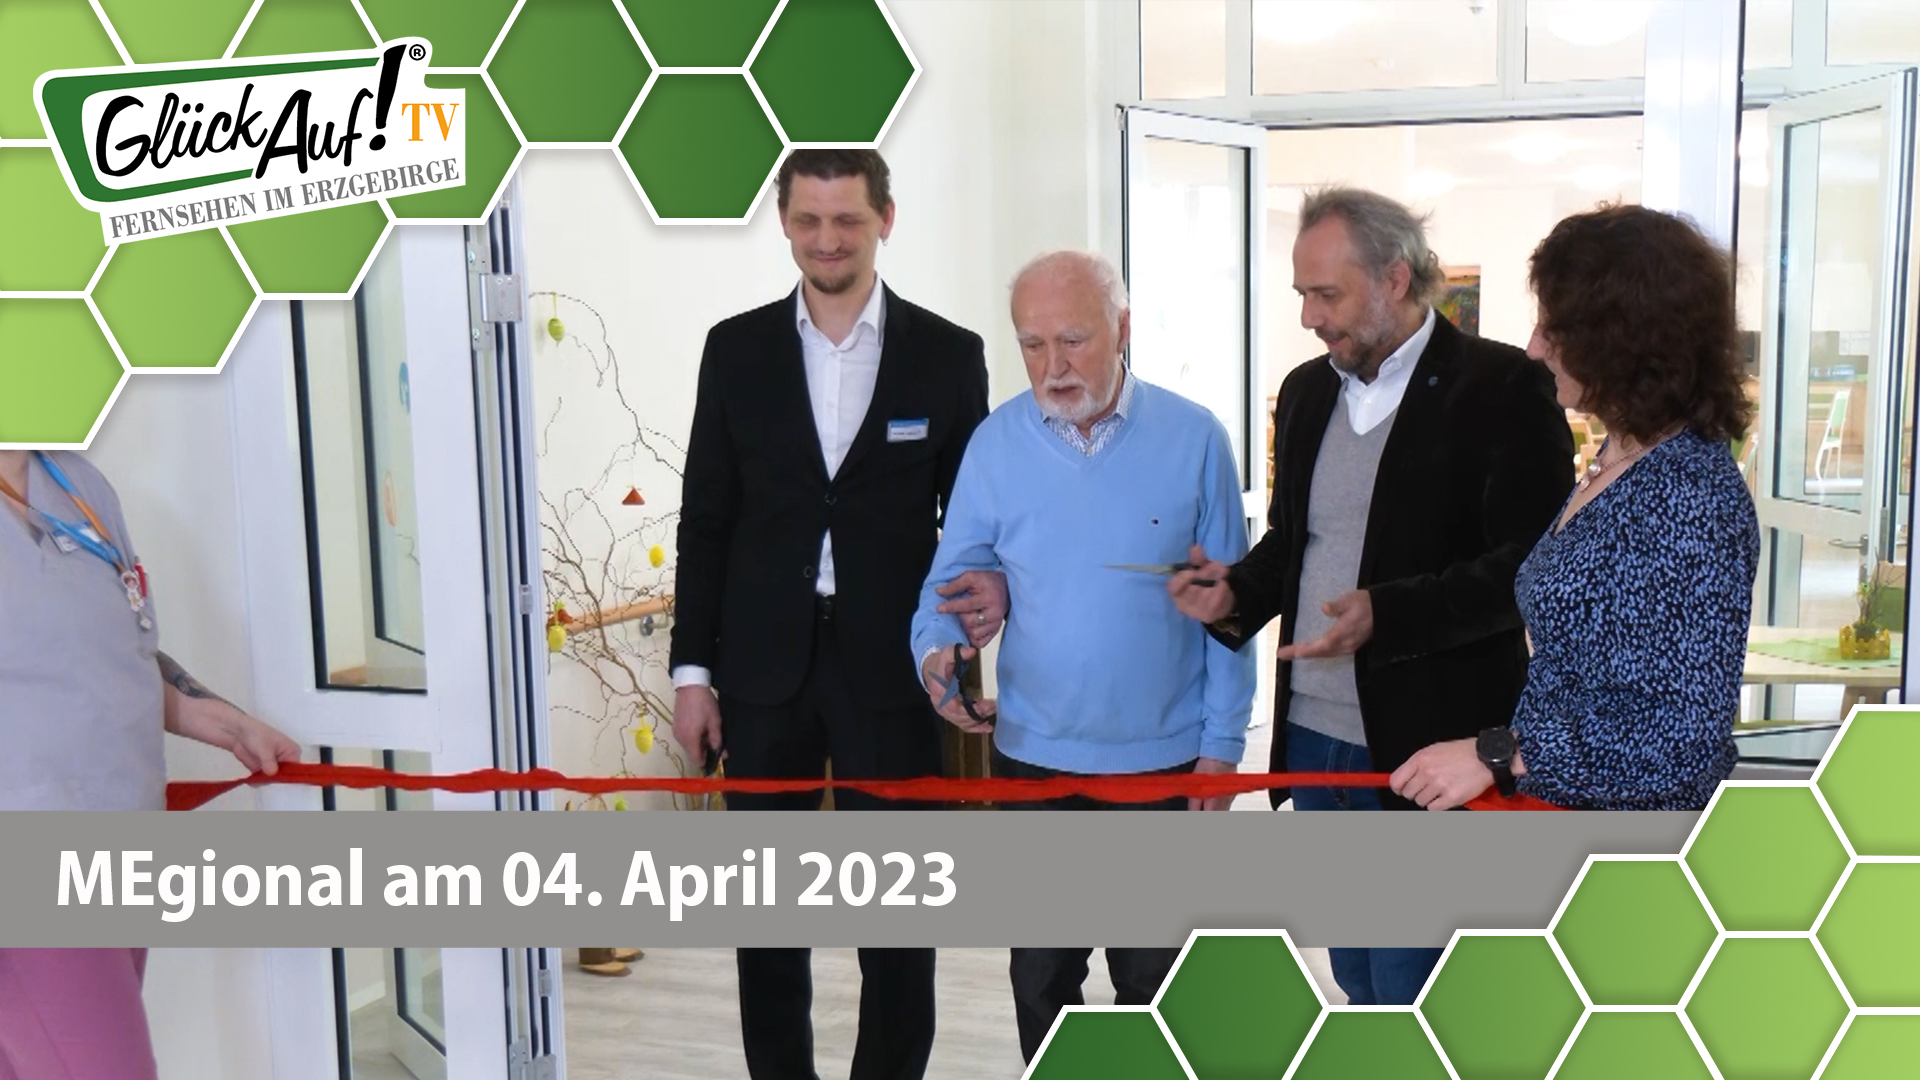 MEgional am 04. April 2023 mit der Eröffnung der Pflegeeinrichtung in Zschopau